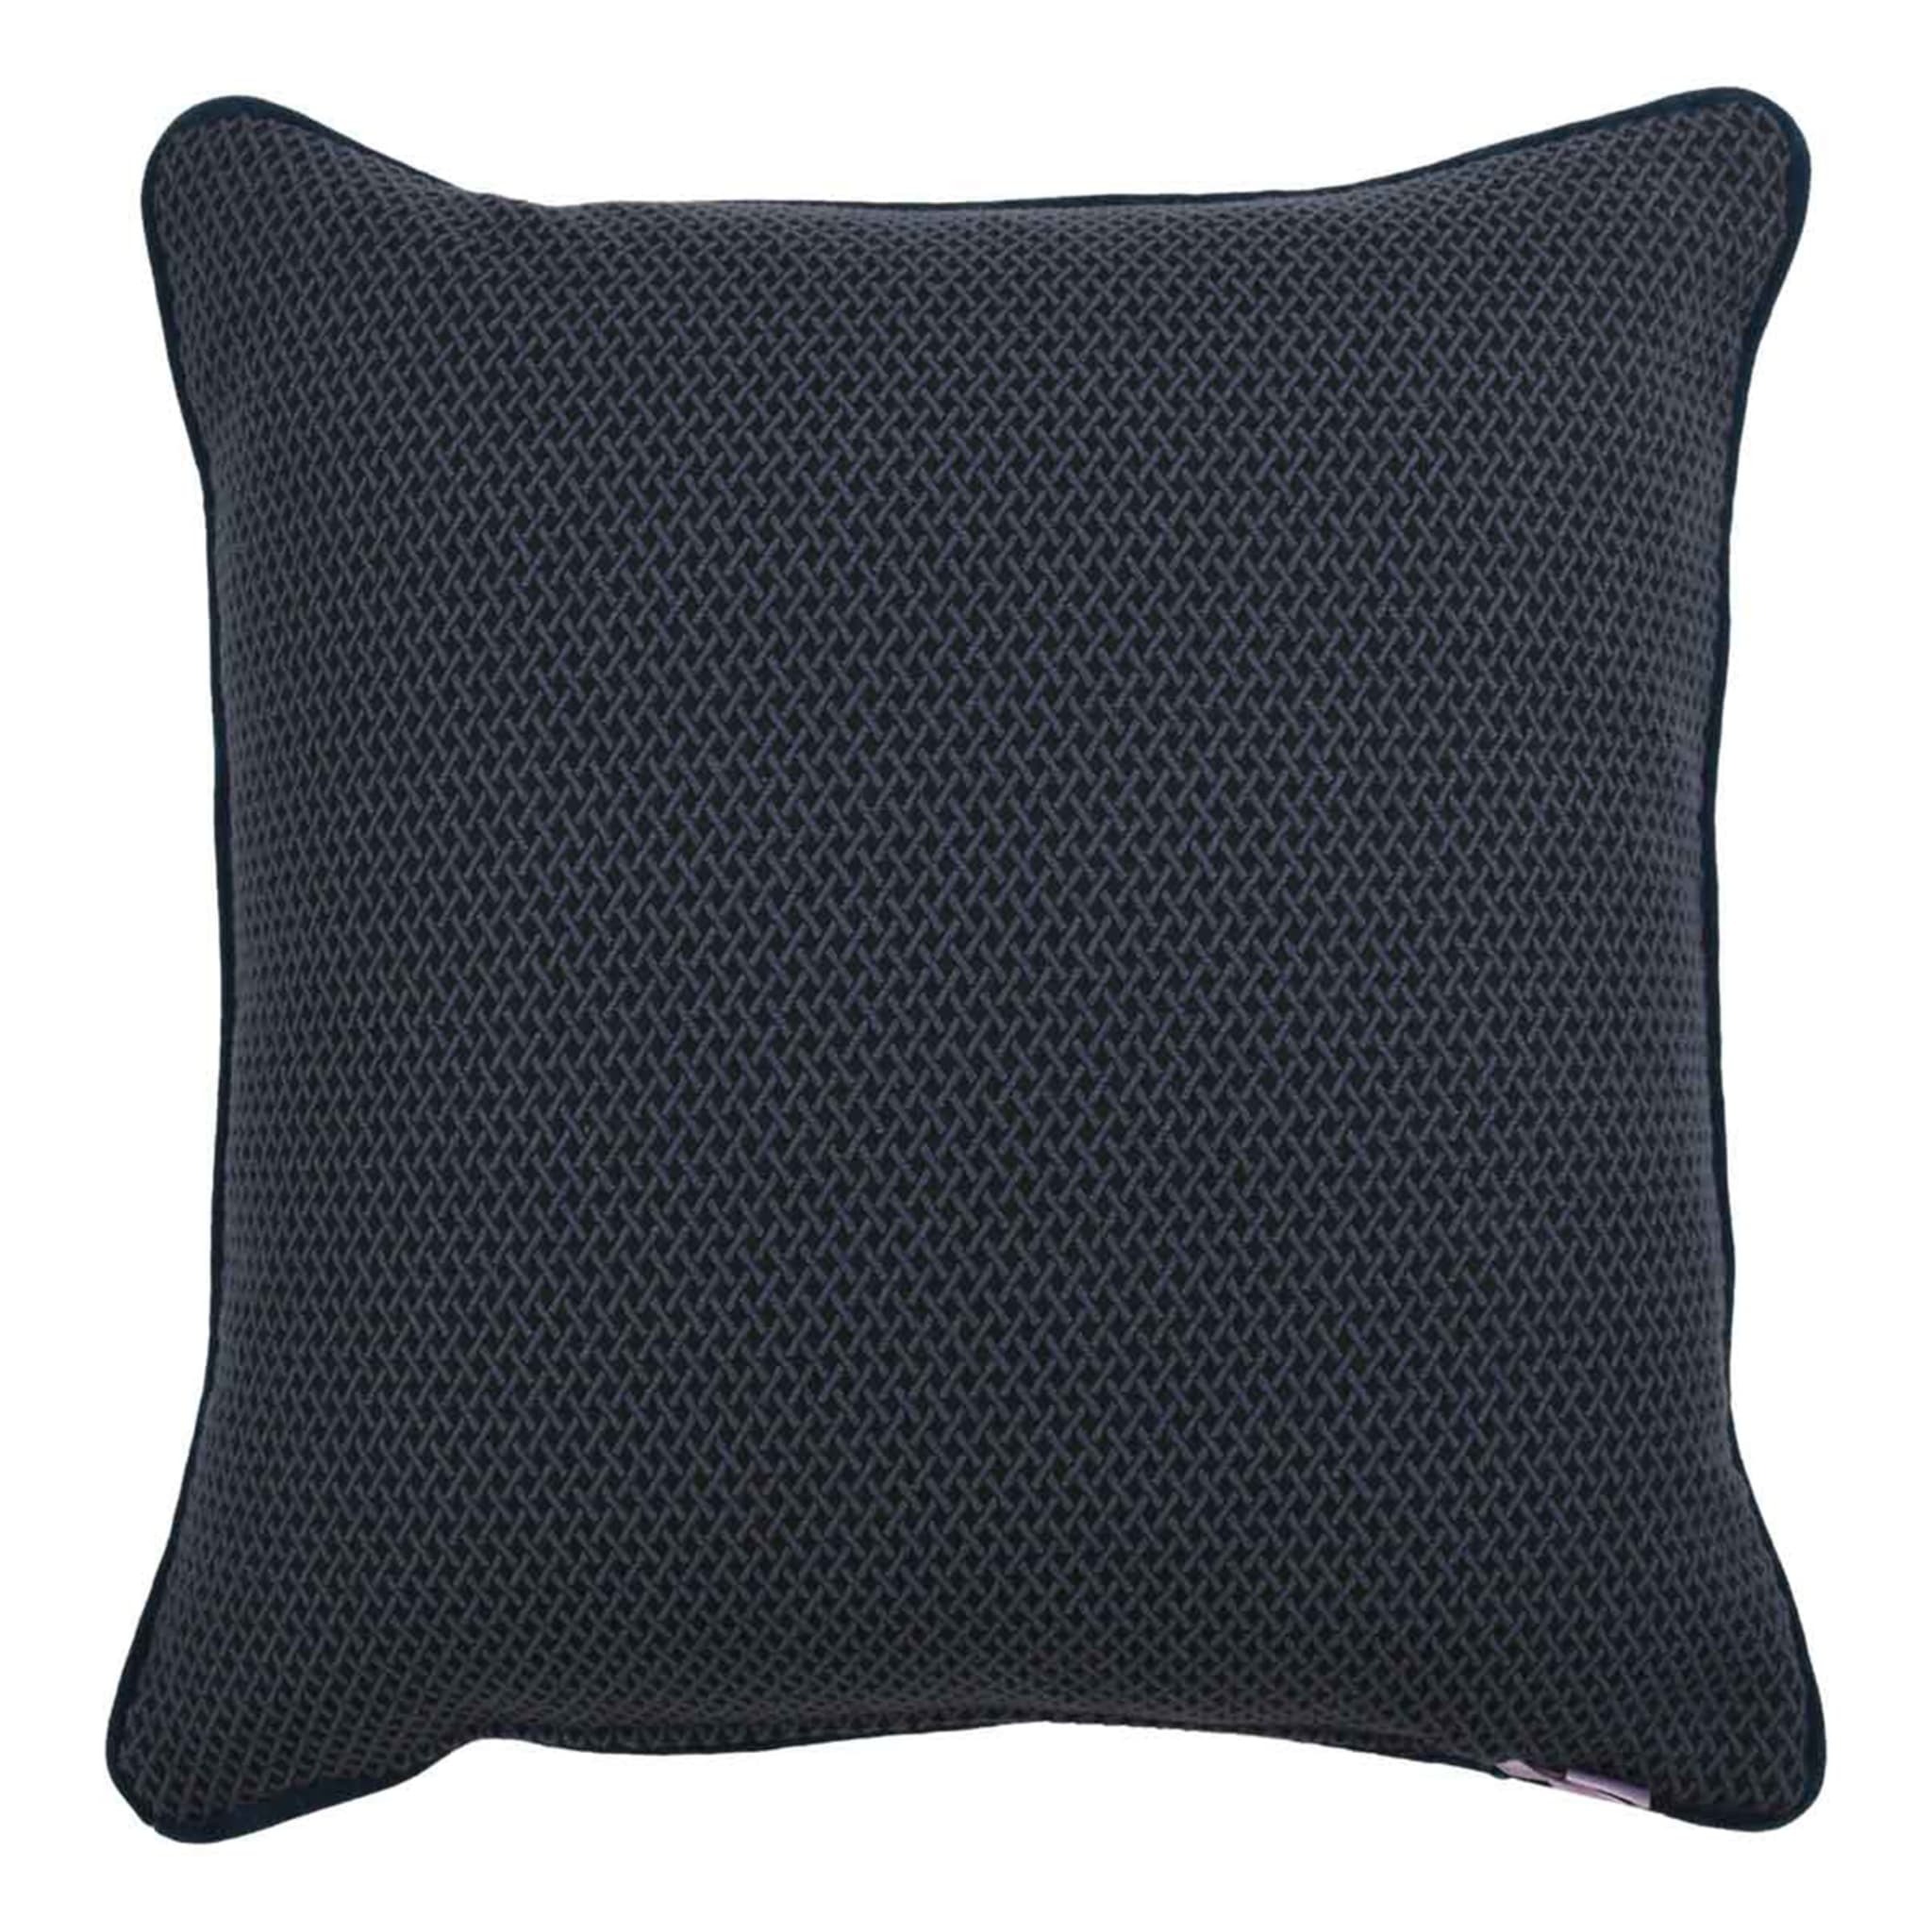 Blue Carrè Cushion in geometric jacquard fabric - Alternative view 1